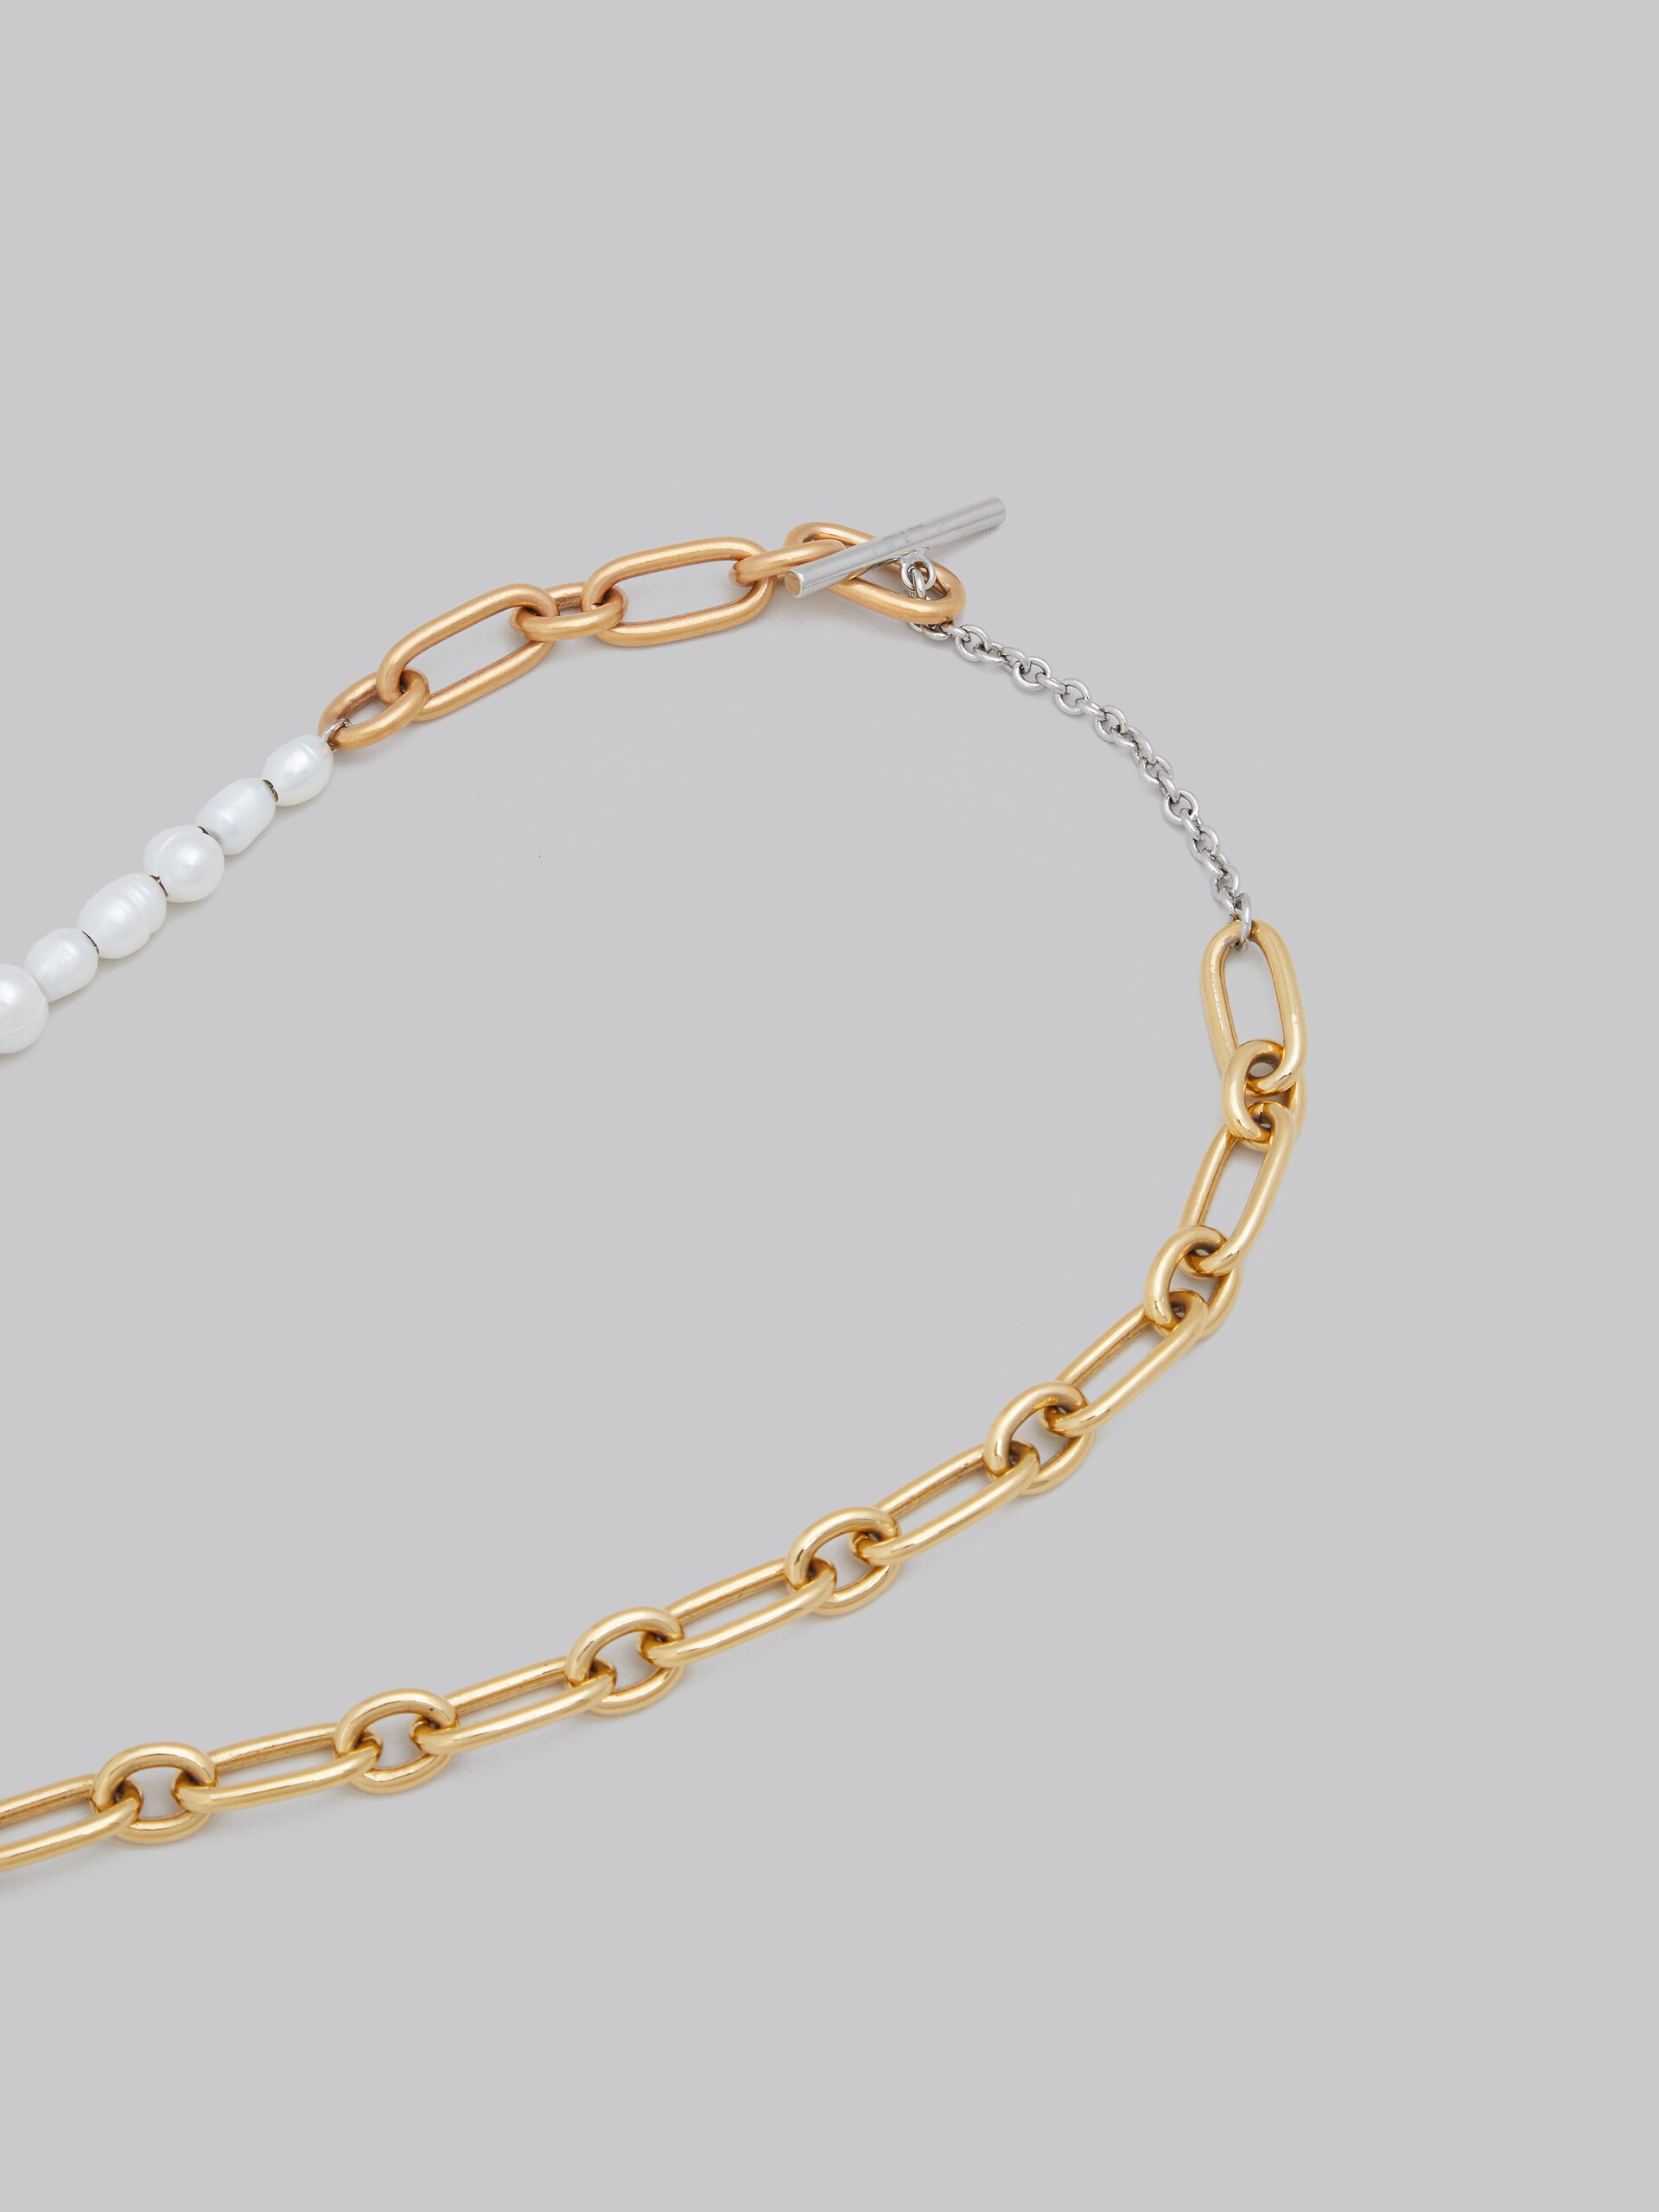 Collier en chaîne avec différents maillons, perles et anneaux - Colliers - Image 4